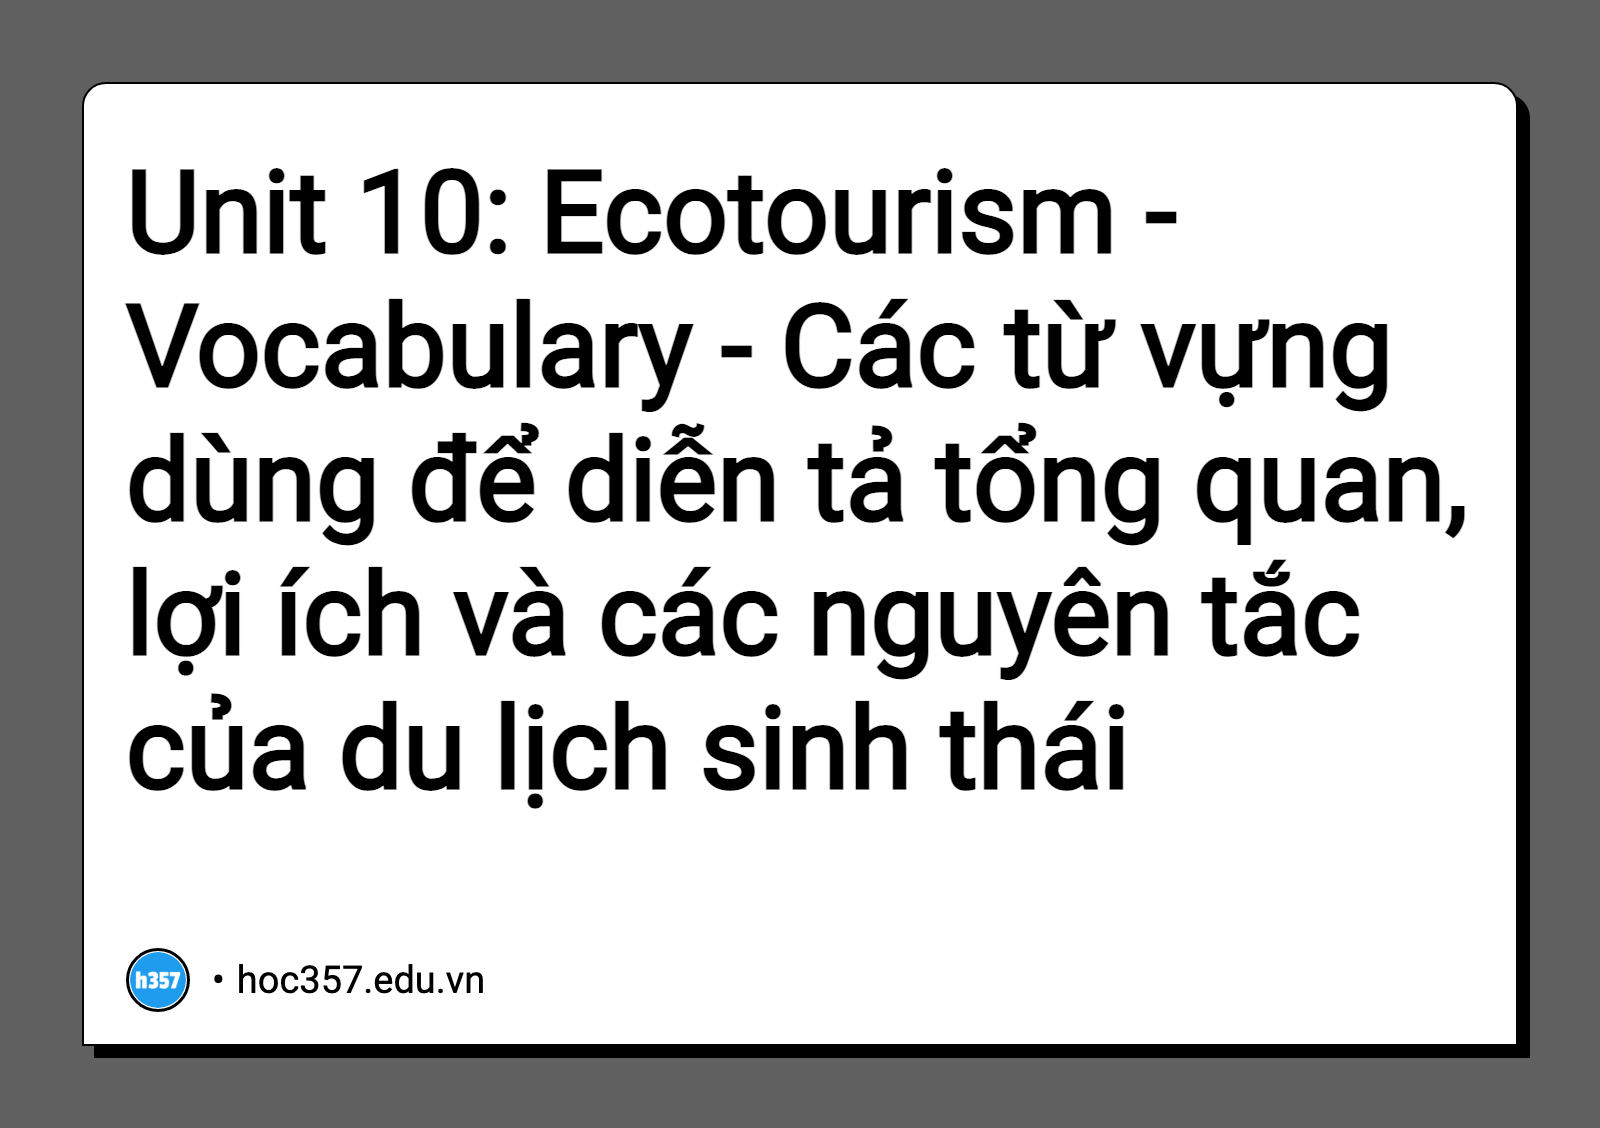 Hình minh họa Unit 10: Ecotourism - Vocabulary - Các từ vựng dùng để diễn tả tổng quan, lợi ích và các nguyên tắc của du lịch sinh thái